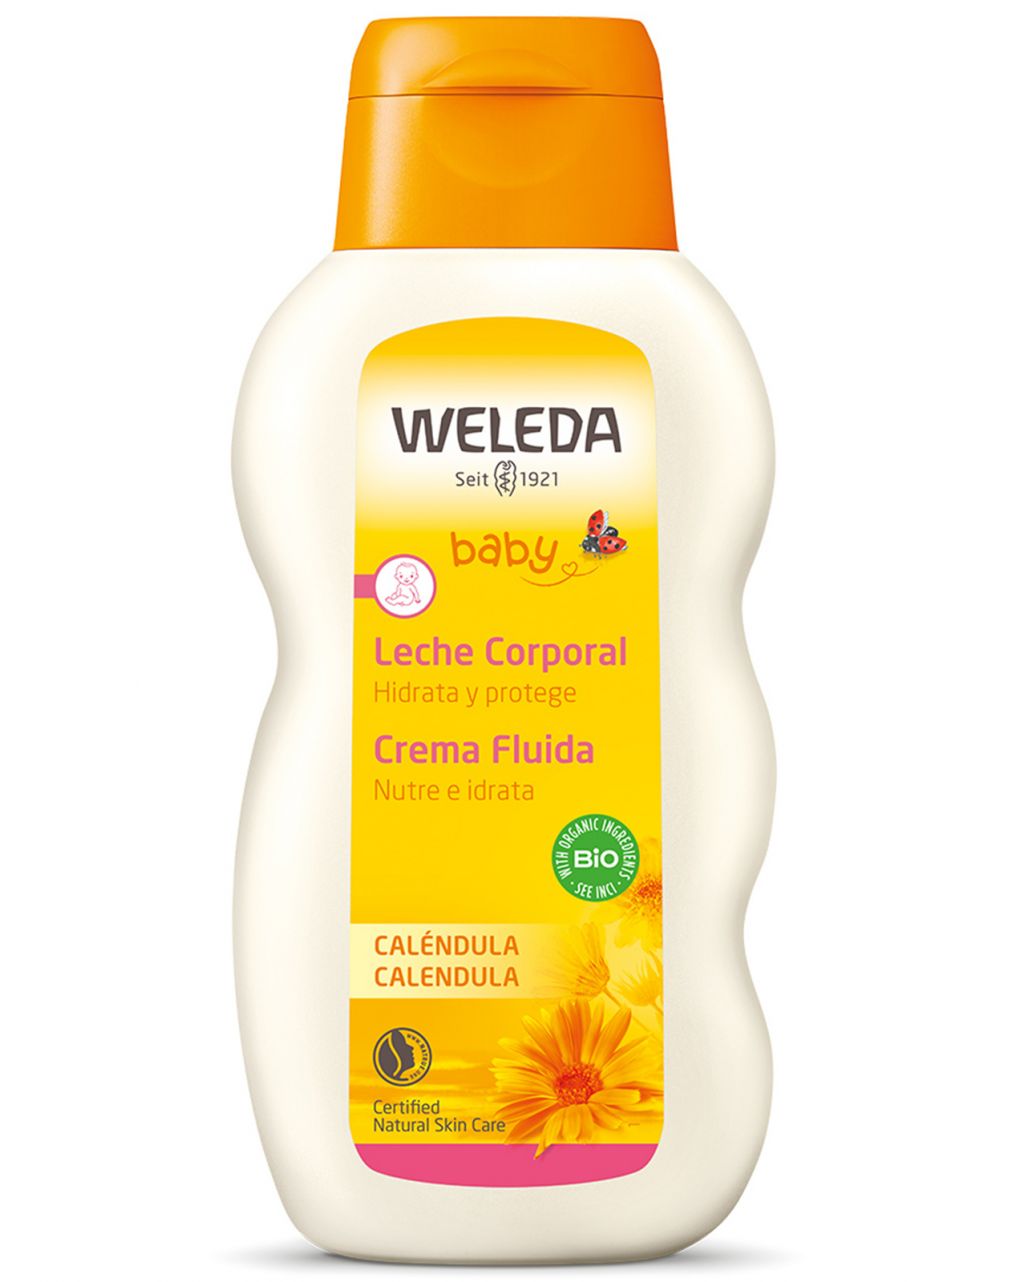 Weleda - baby crema fluida calendula - Weleda